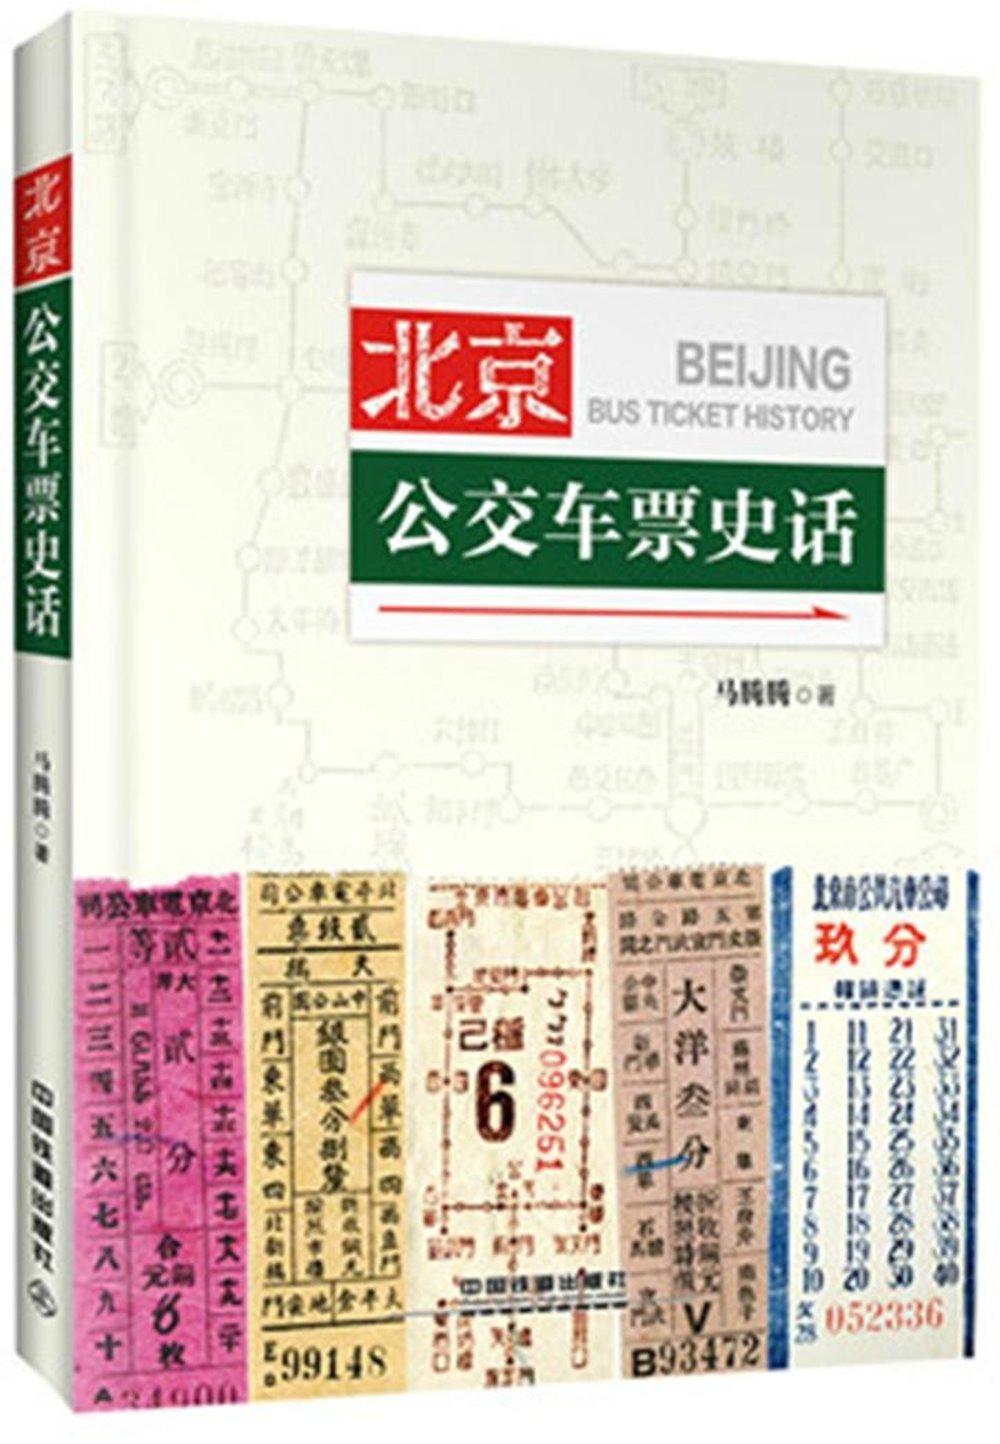 北京公交車票史話